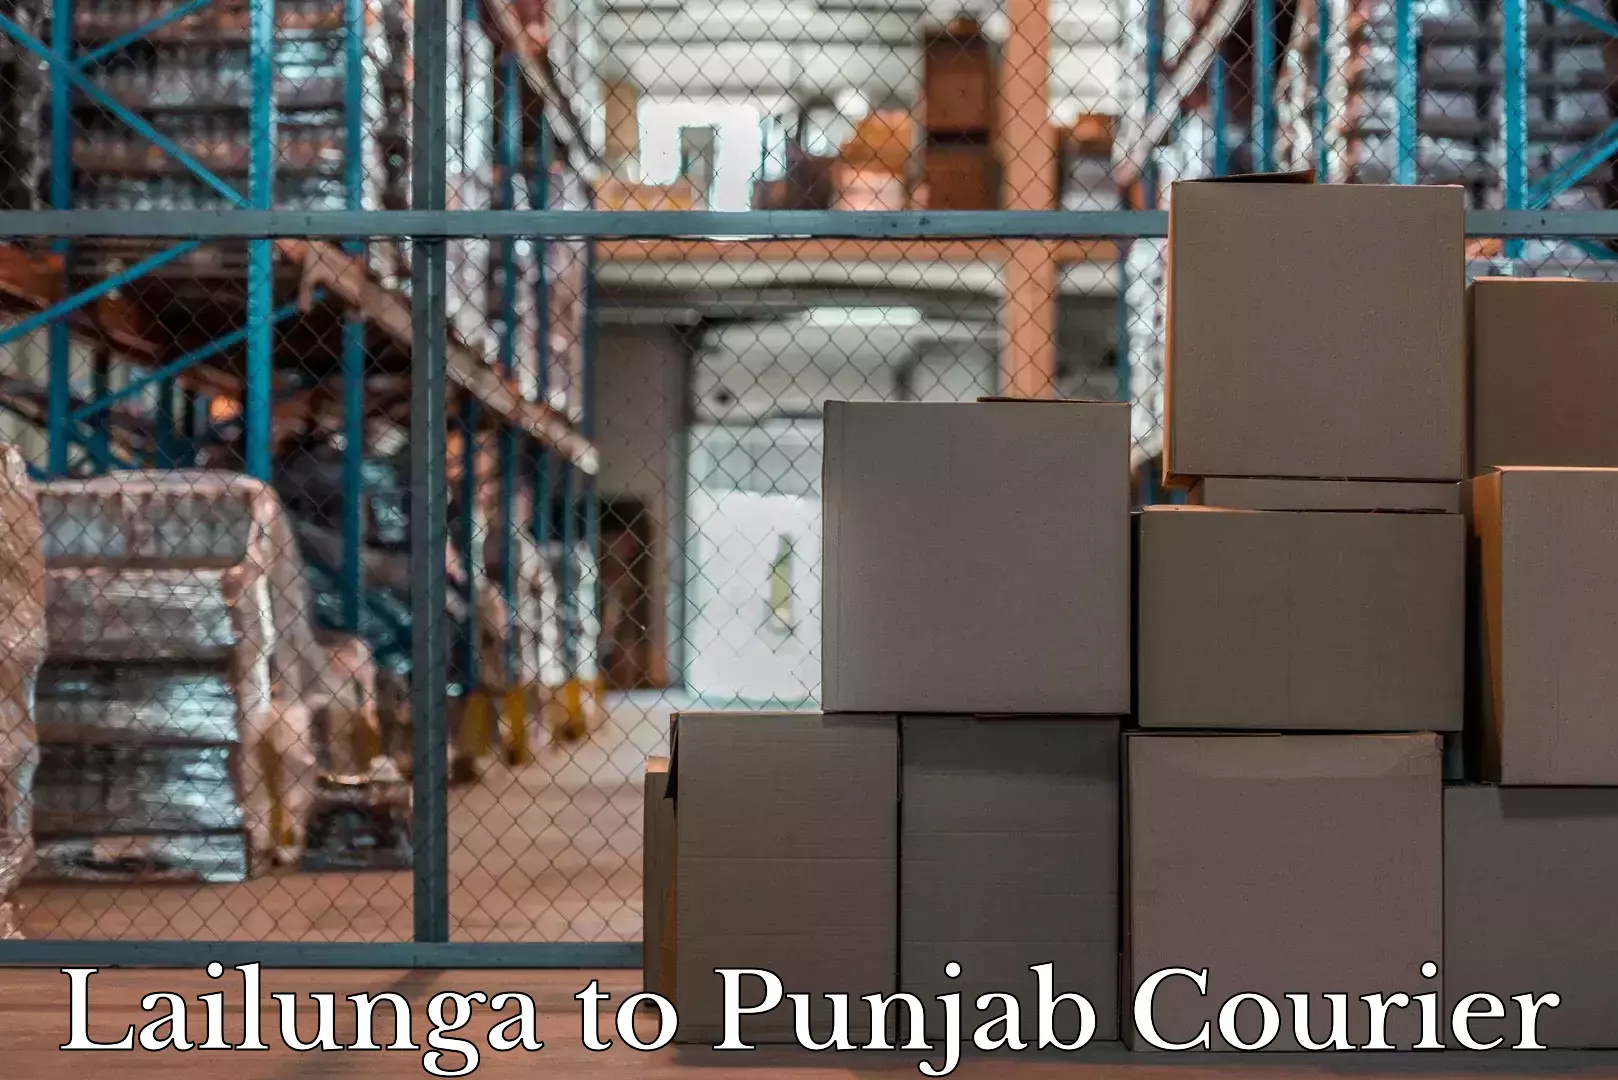 Holiday season luggage delivery Lailunga to Punjab